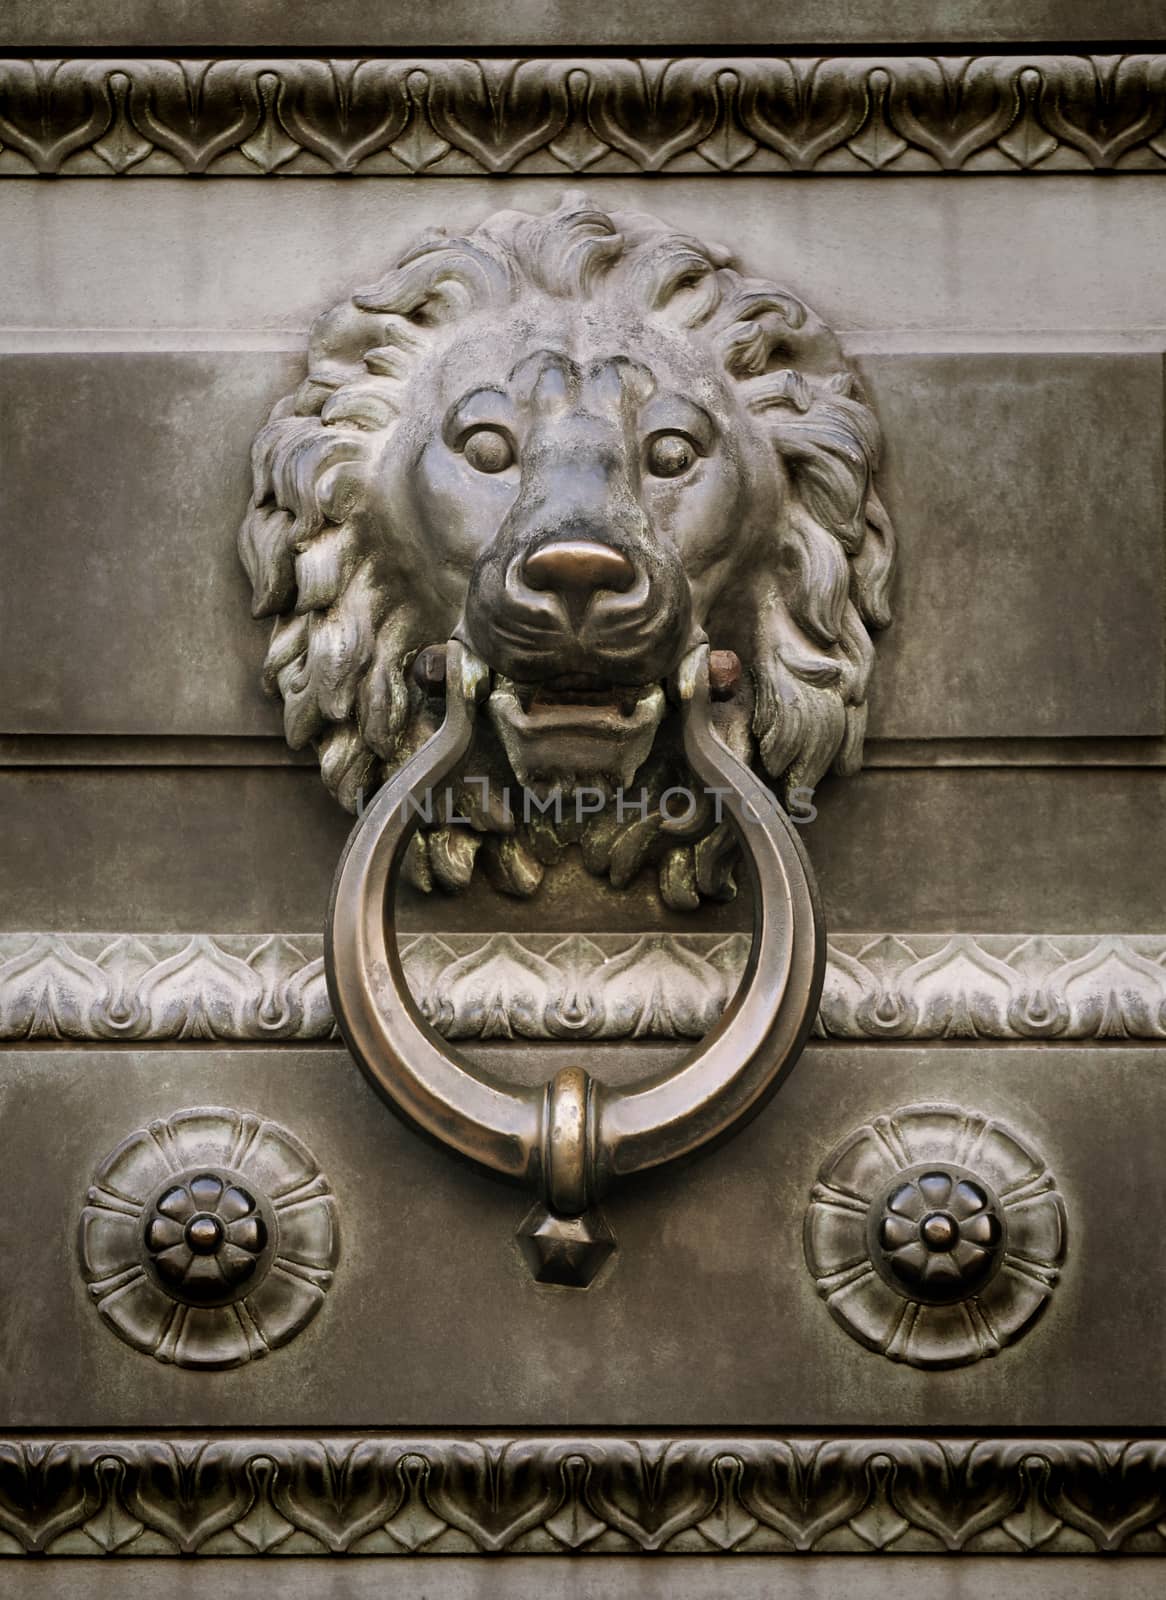 Old lion head door knocker sepia toned